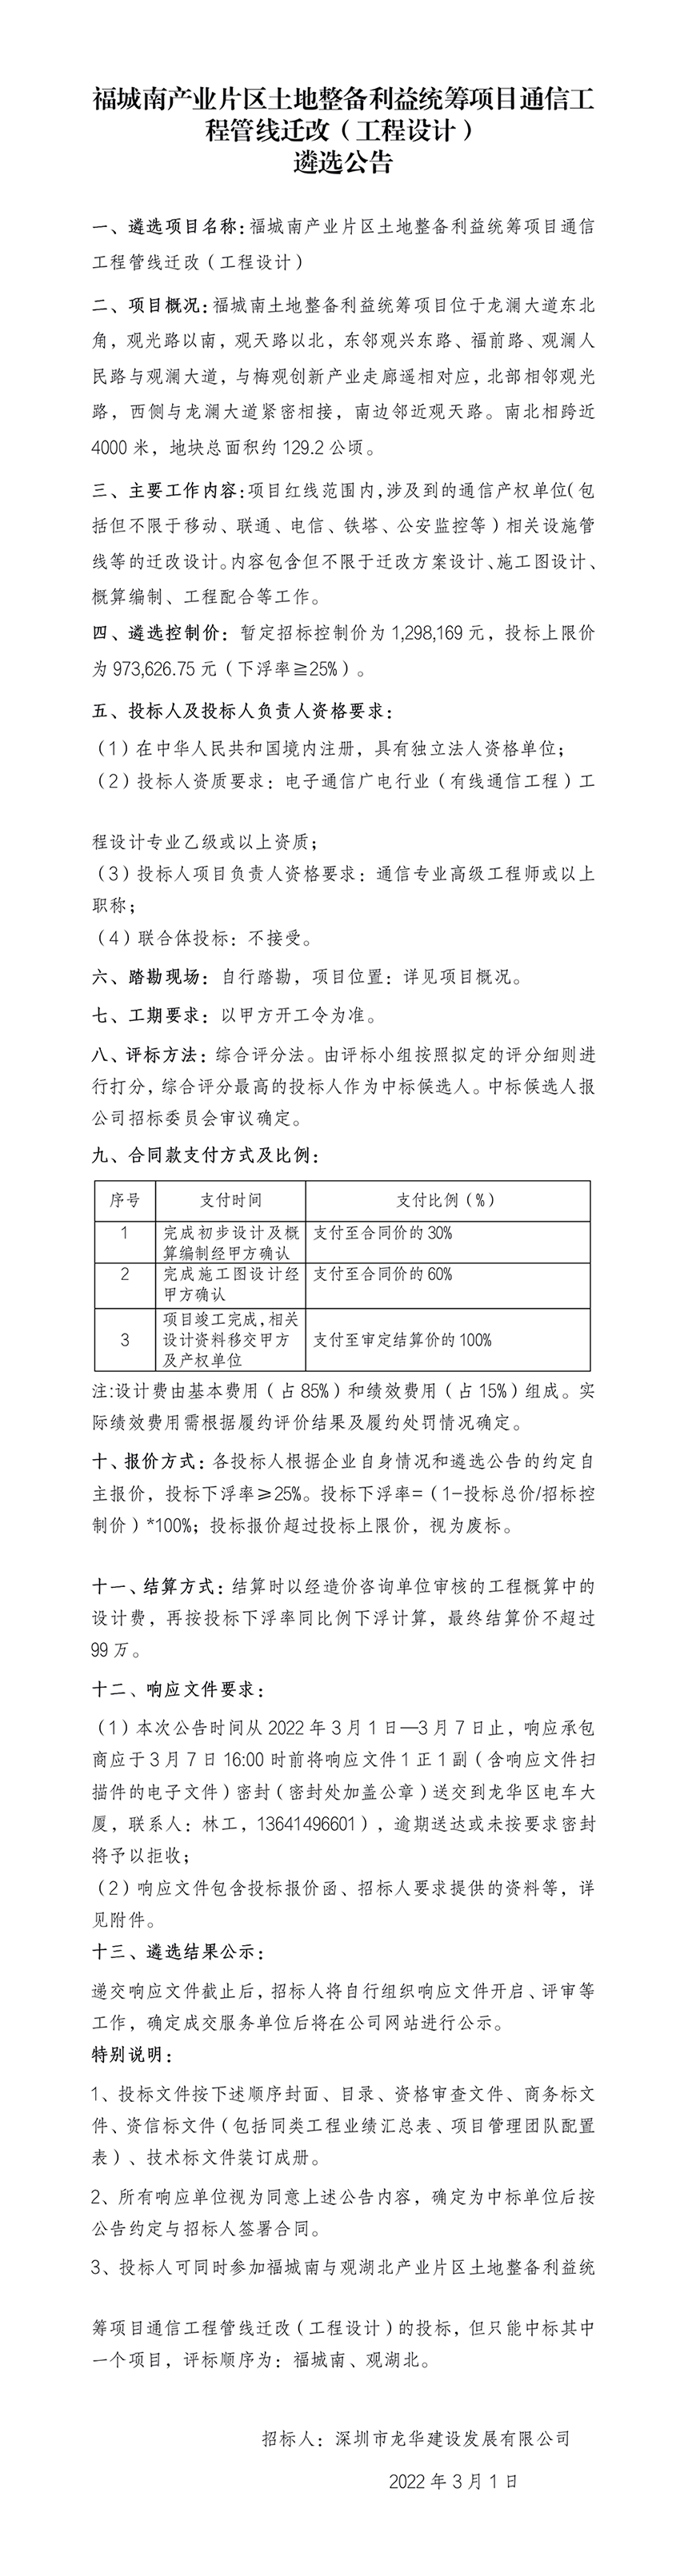 福城南产业片区土地整备利益统筹项目通信工程管线迁改（工程设计） 遴选公告